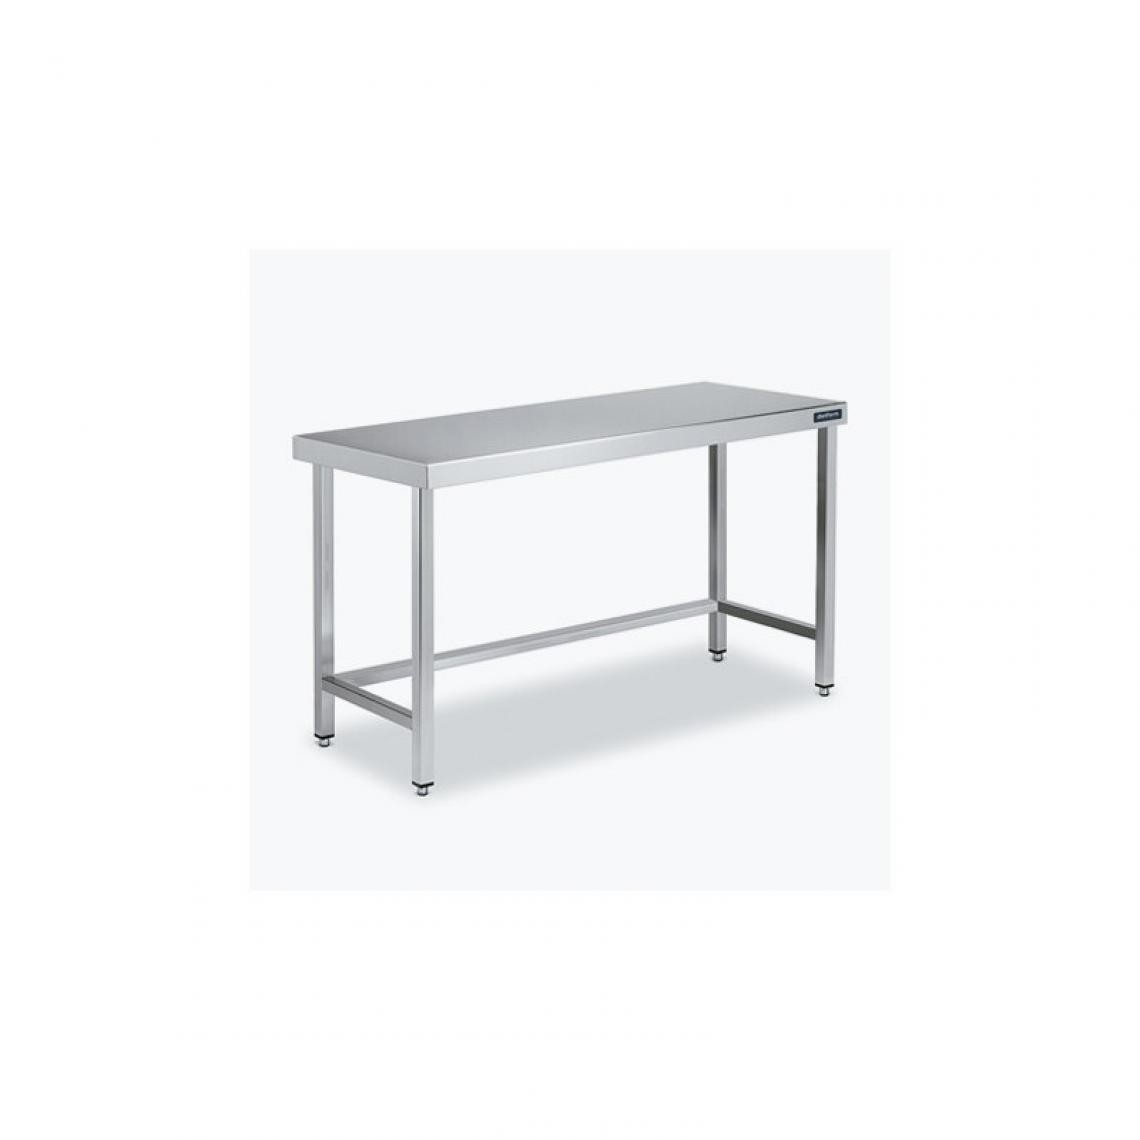 DISTFORM - Table Centrale 600x600 avec Renforts - Distform - Inox 18/101100x600x850mm - Tables à manger